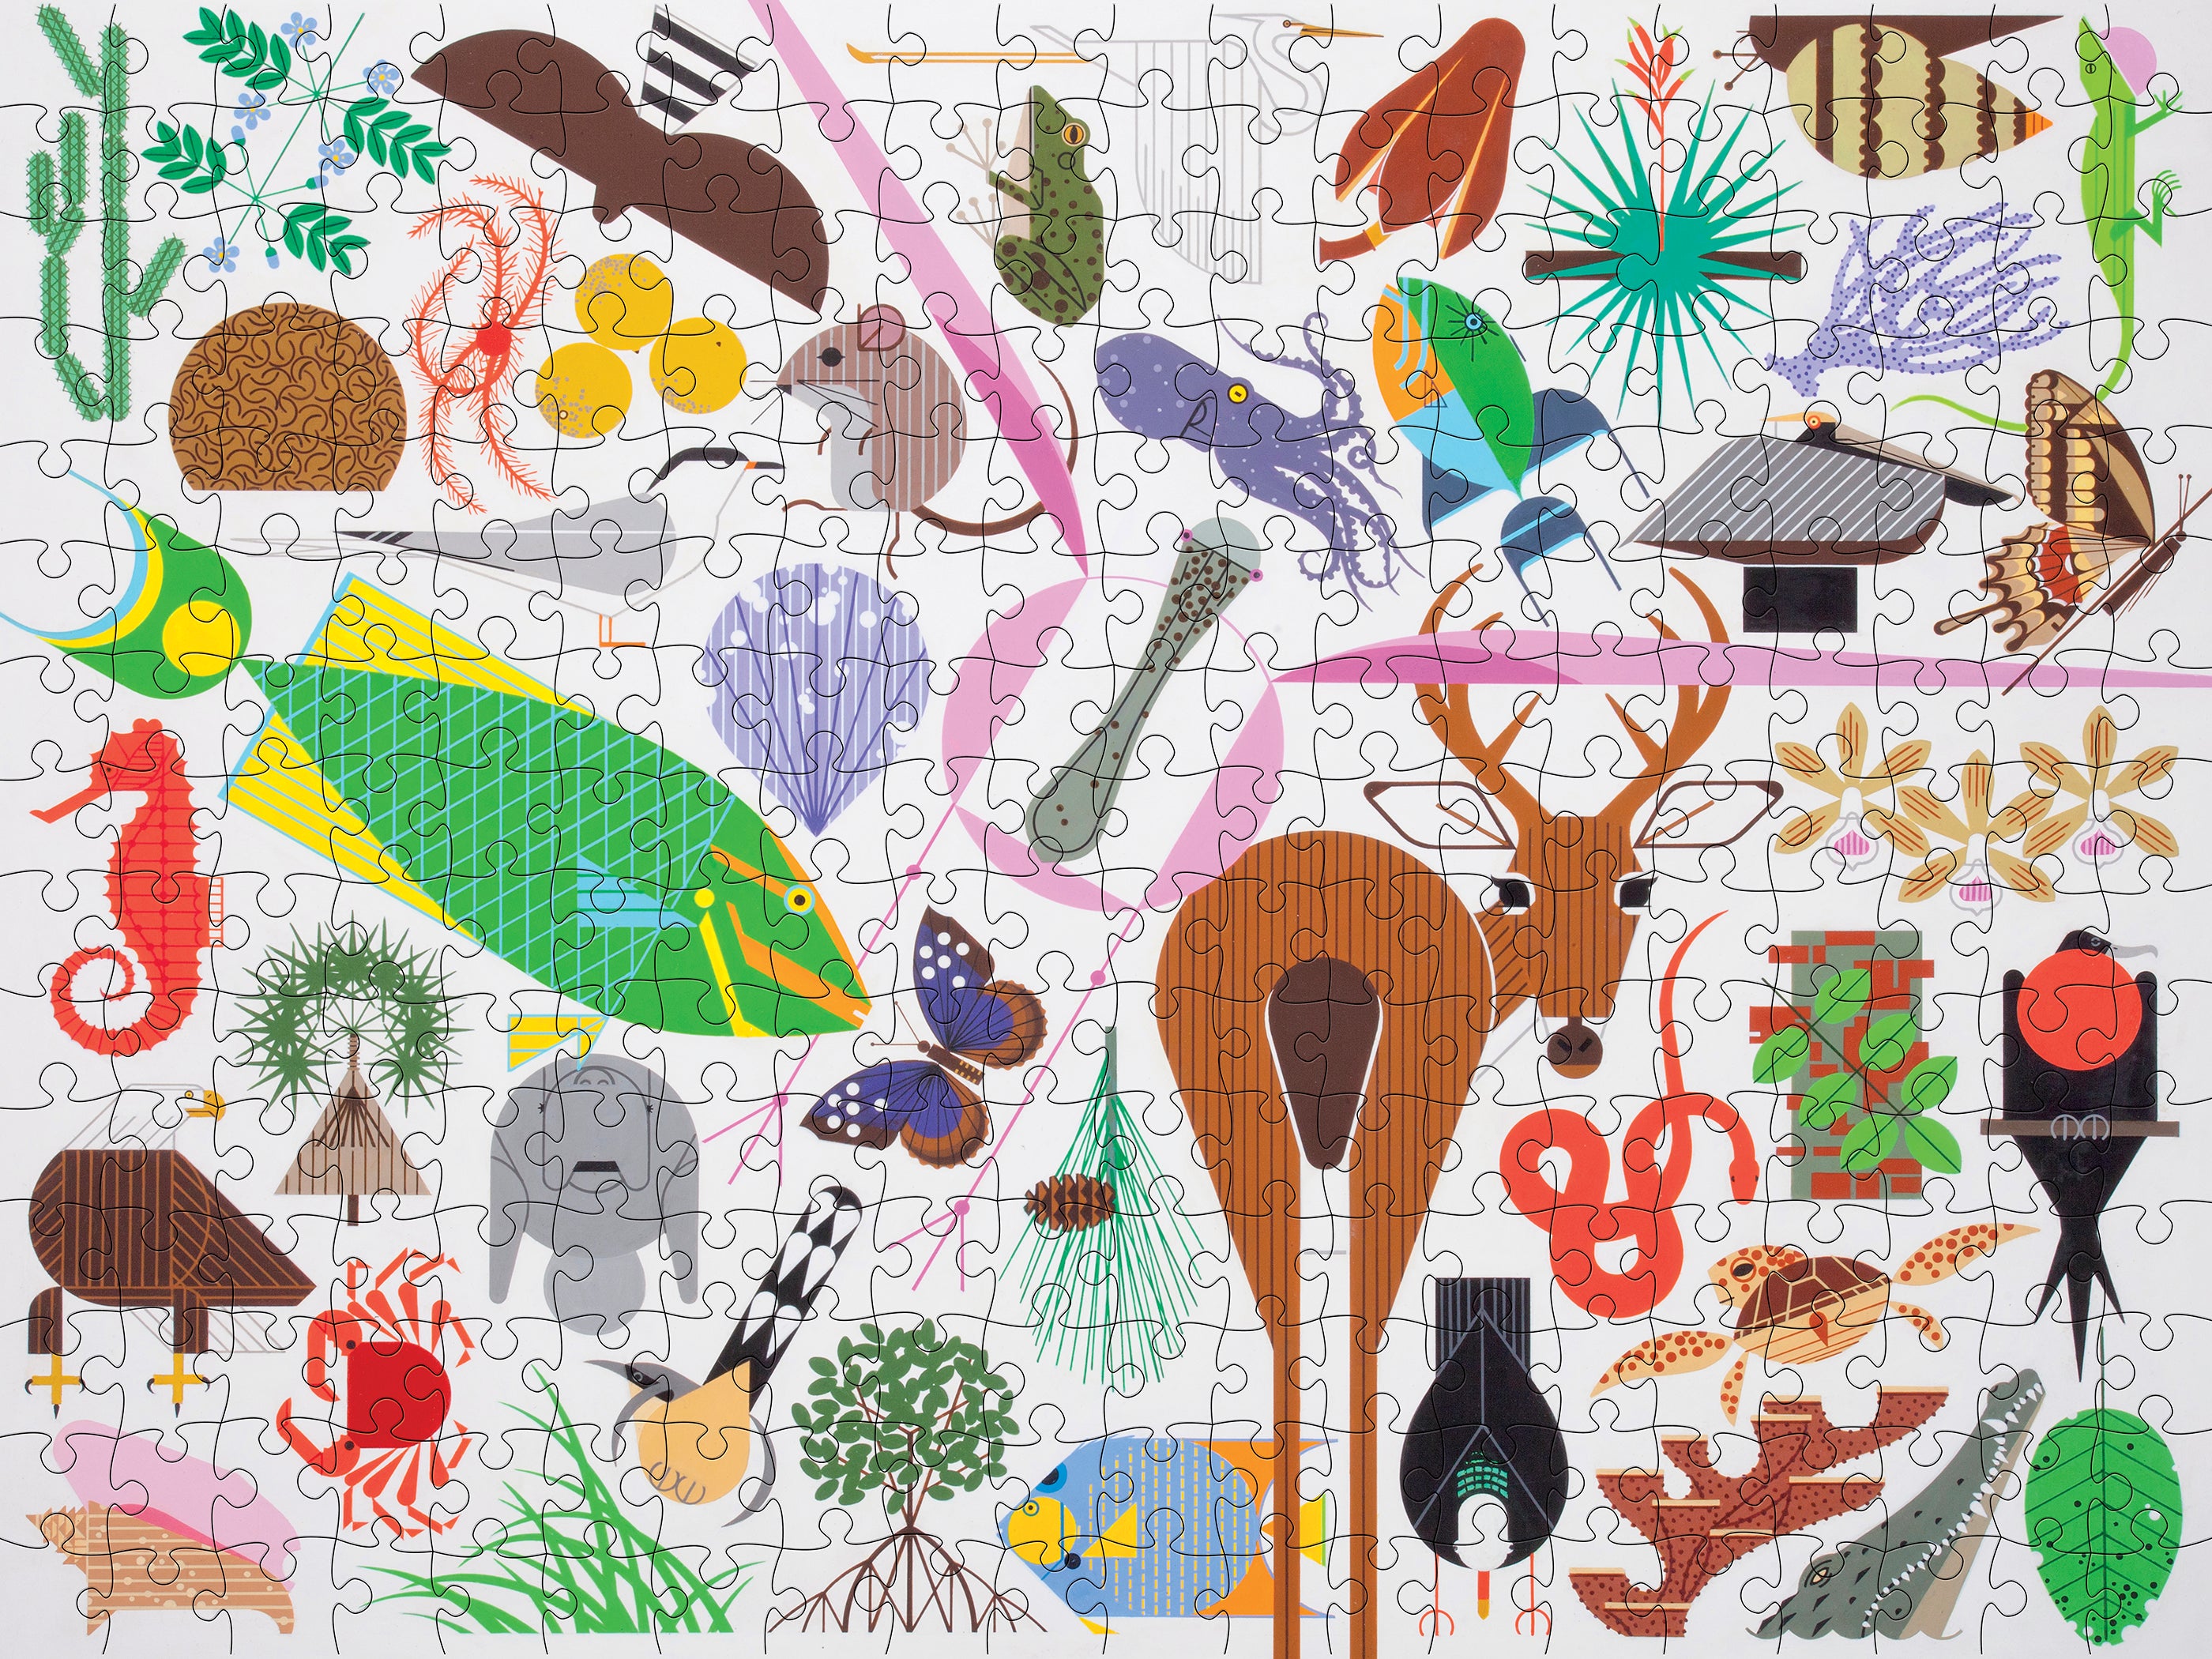 Charley Harper: The Sierra Range 1,000-piece Jigsaw Puzzle